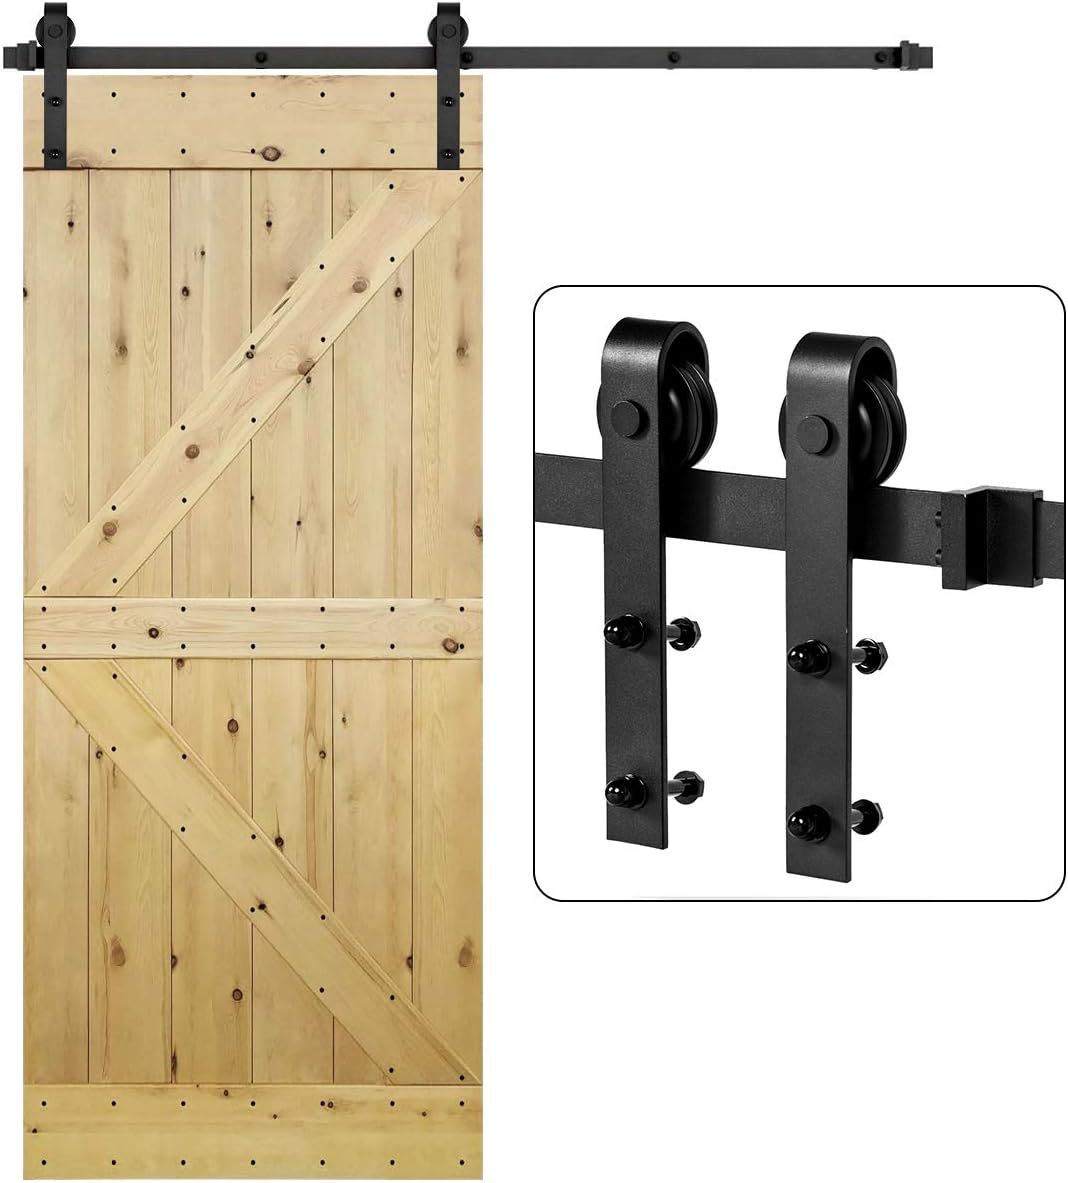 U-MAX 6.6 FT Sliding Barn Wood Door Basic Sliding Track Hardware Kit (Basic"J") | Amazon (US)